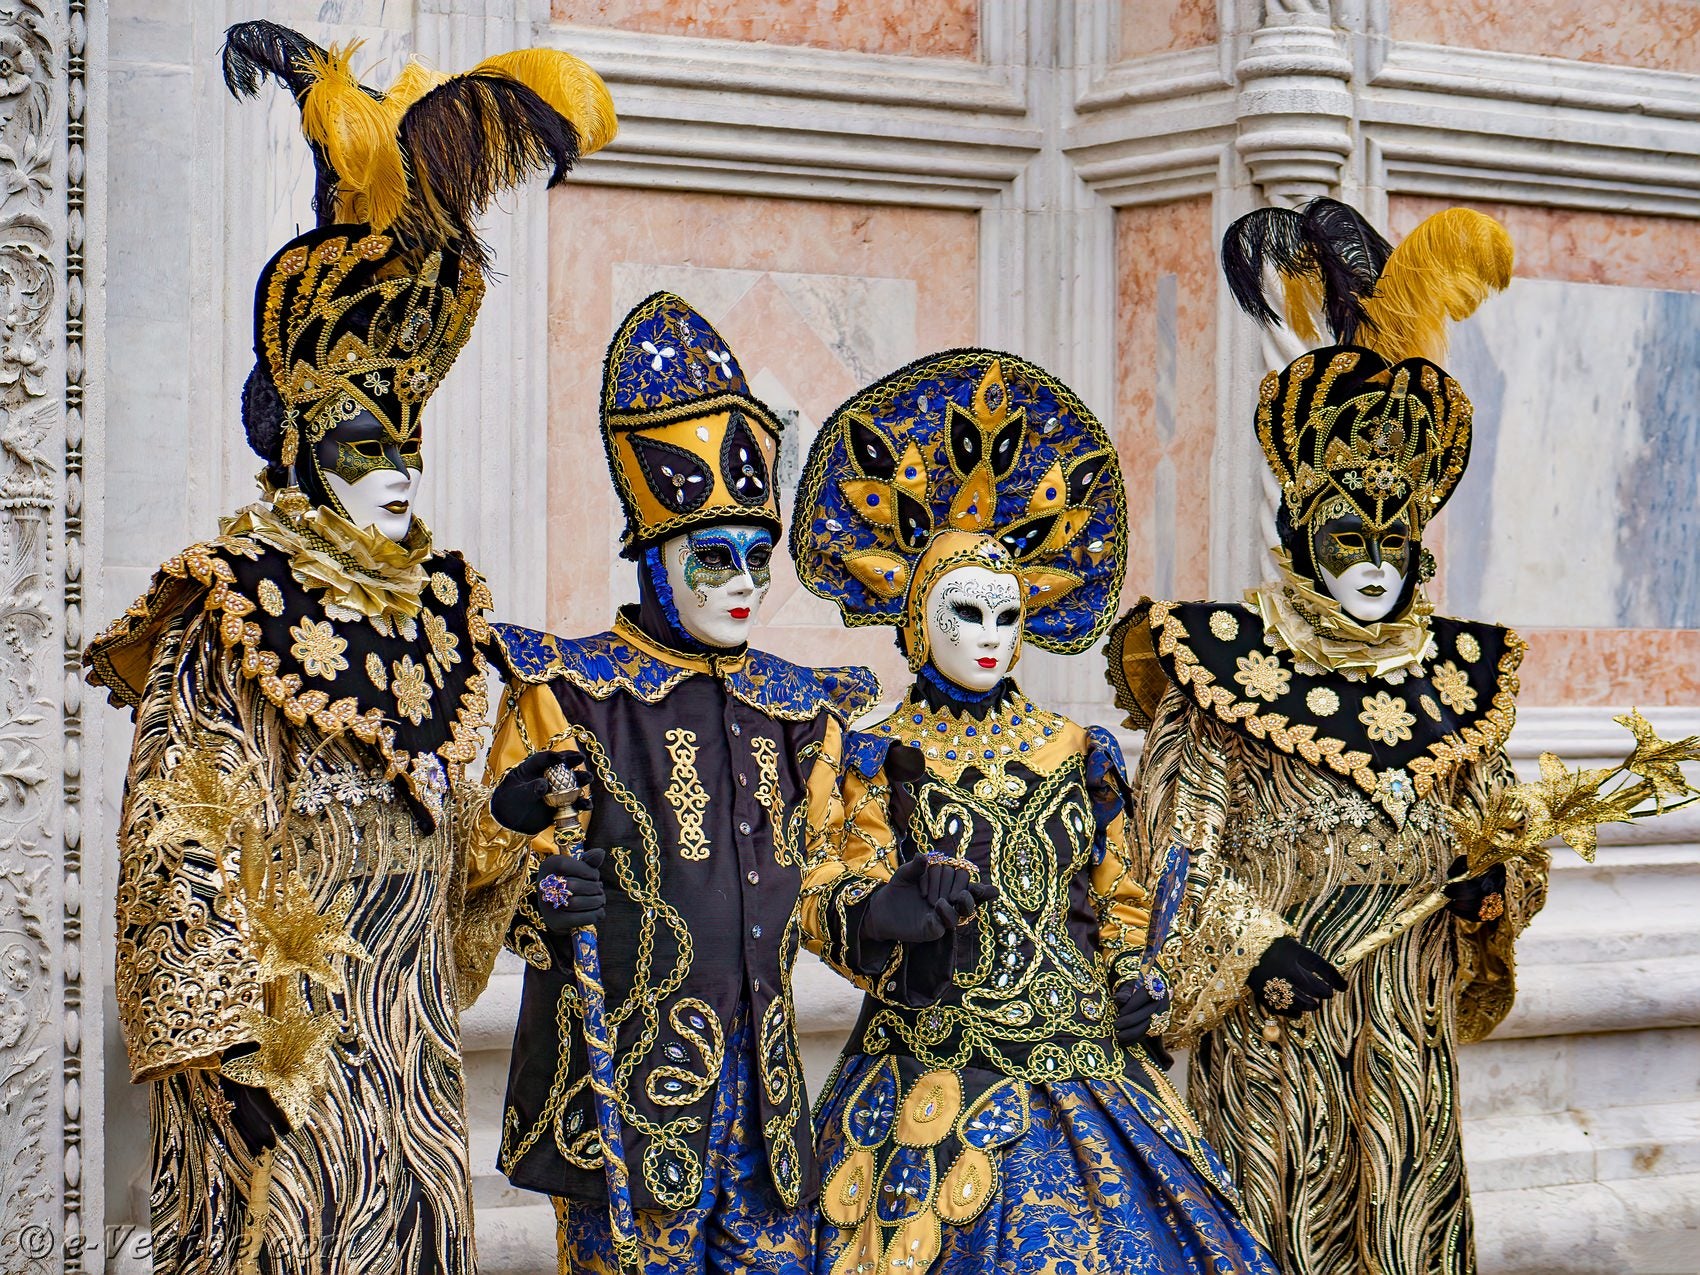 Masques et Costumes Carnaval de Venise 2019 Page seize